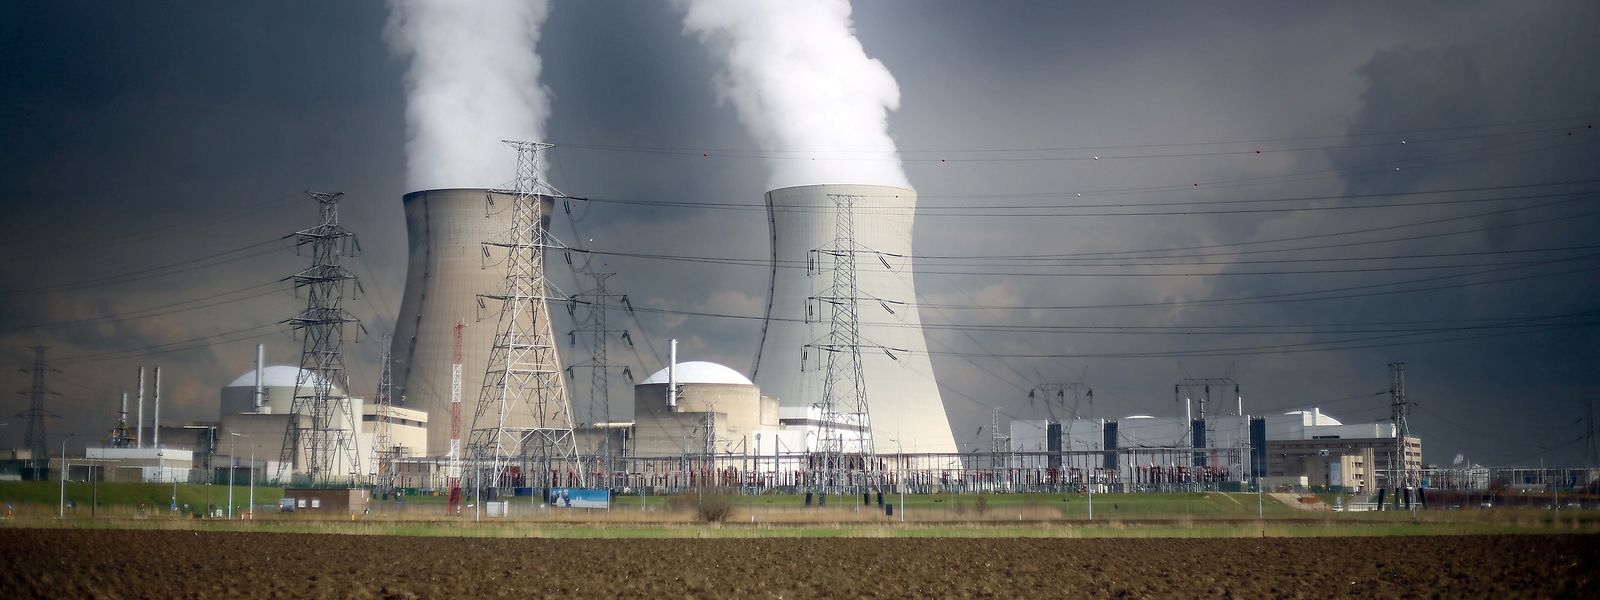 Dans un rapport, l'Agence internationale de l'Energie (AIE) estime que la sortie du nucléaire entraînera un recours accru au gaz naturel pour générer de l'électricité. 